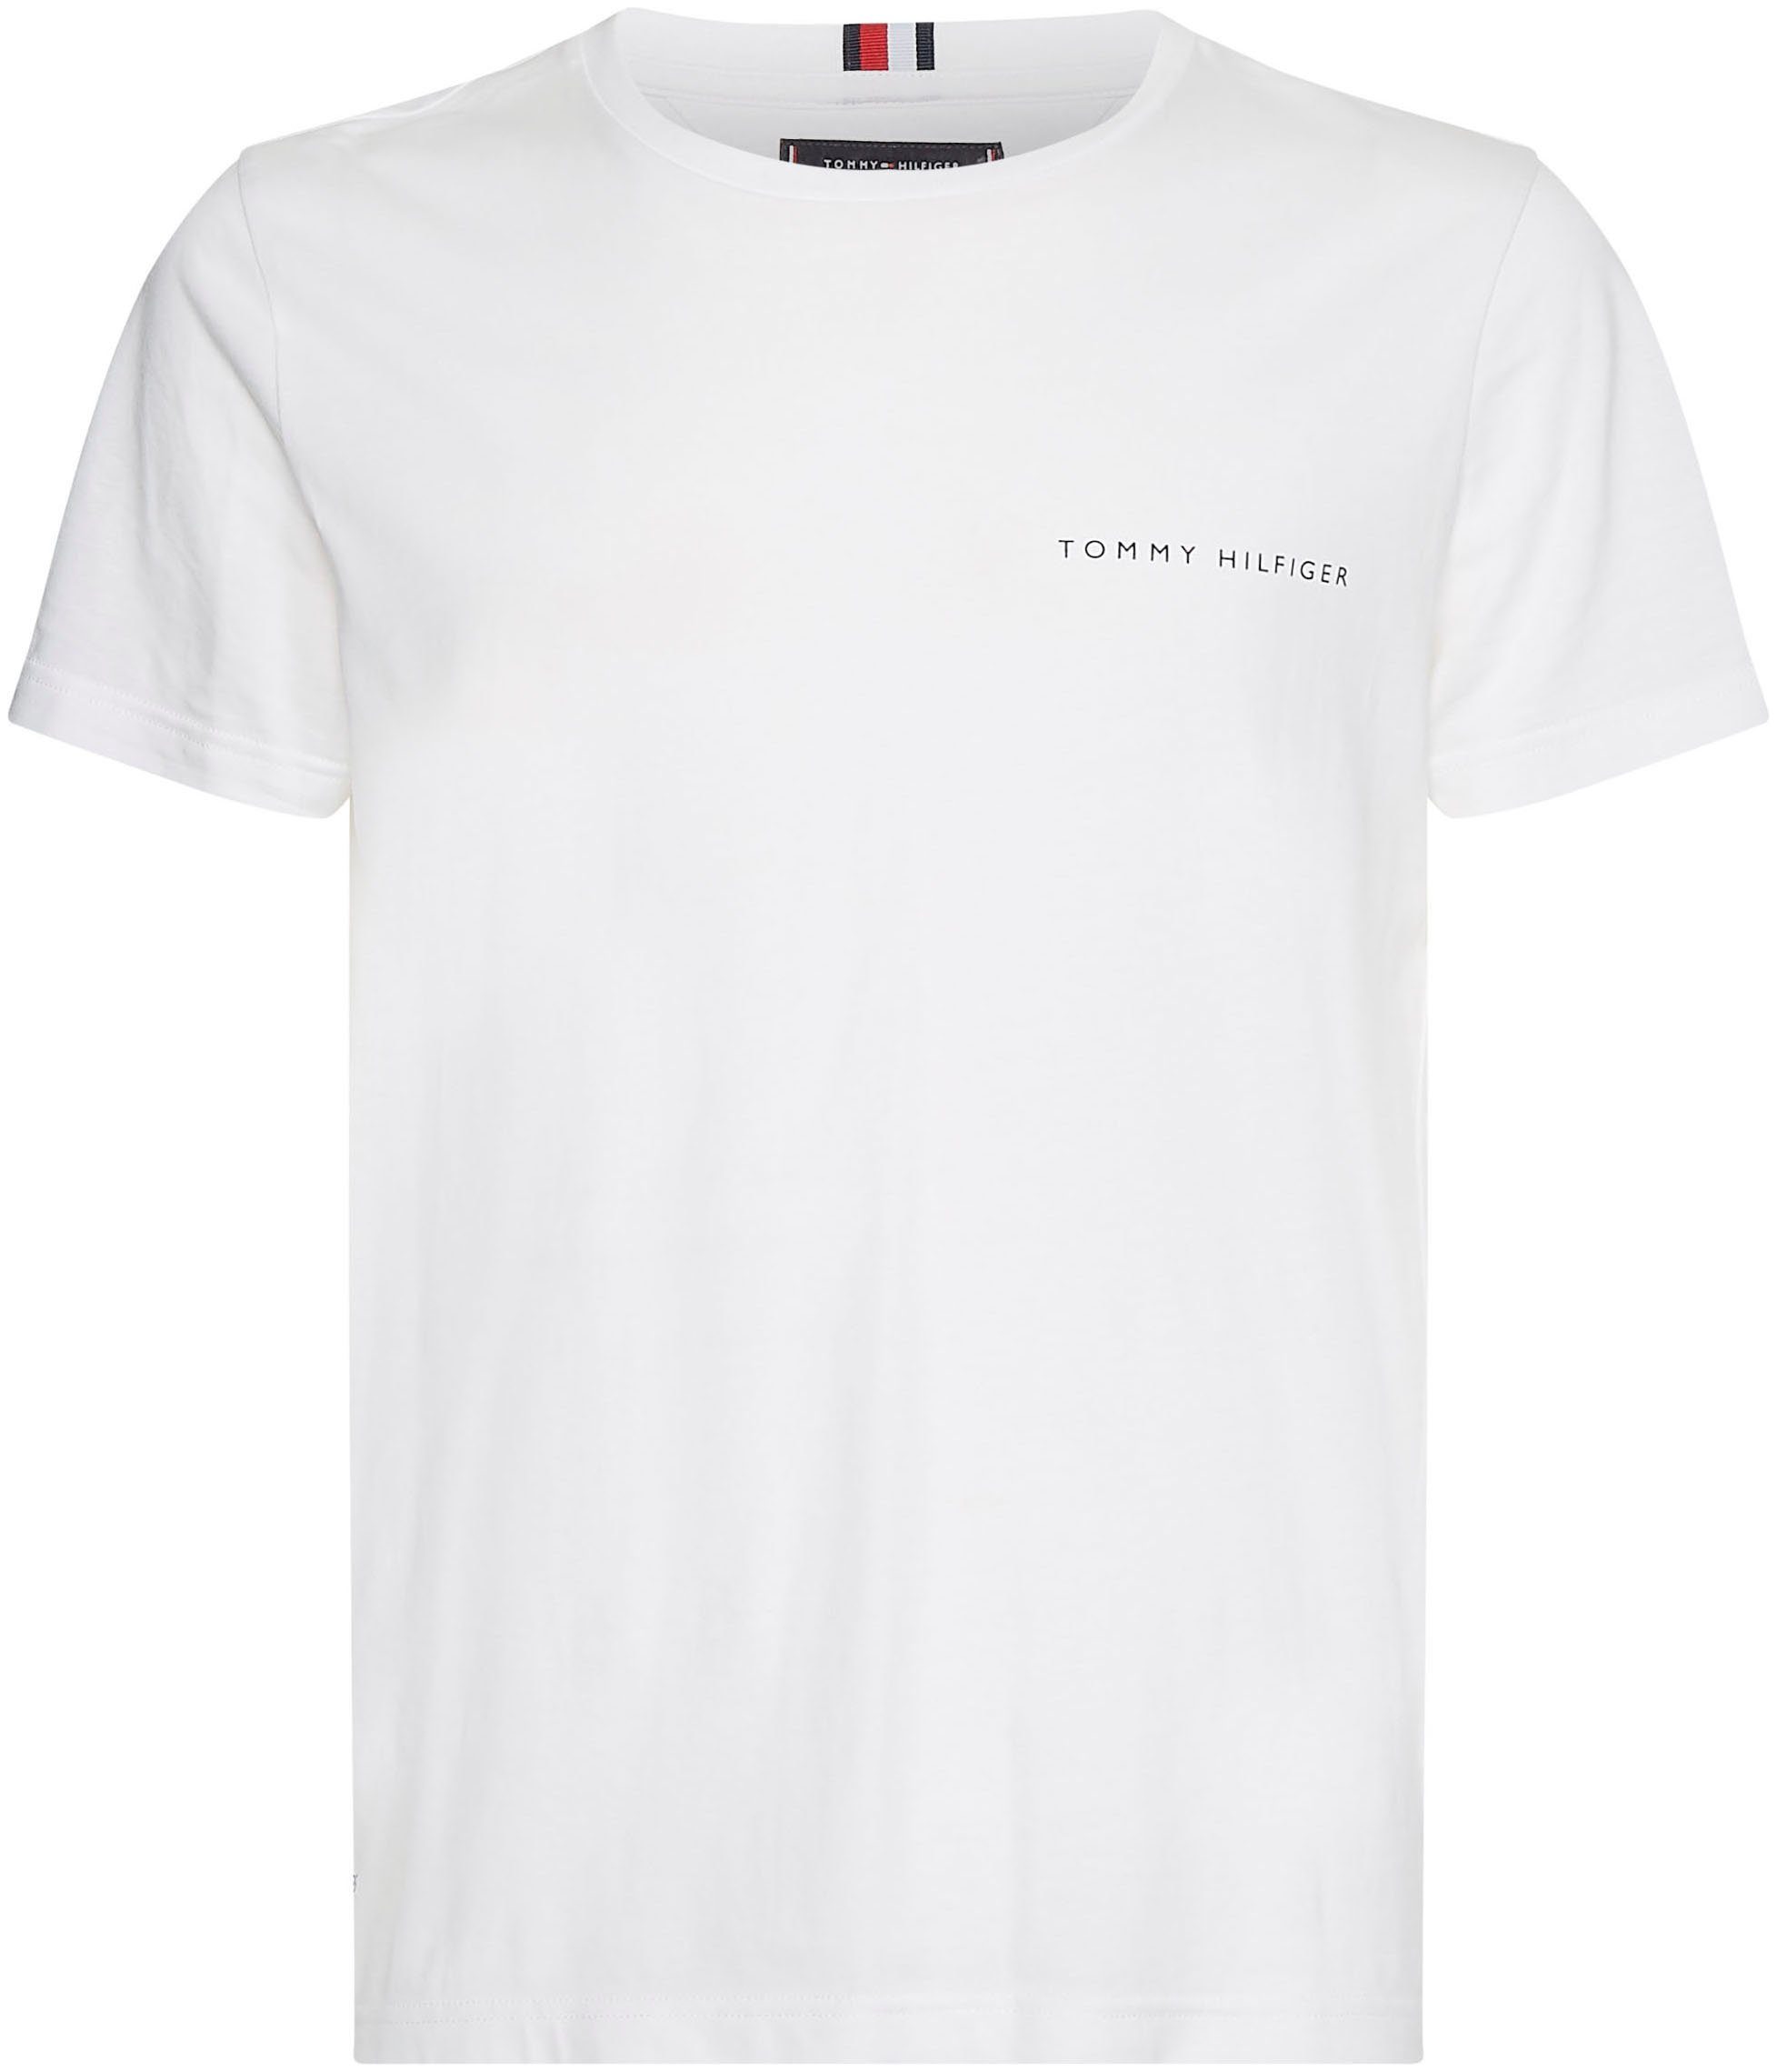 PLACEMENT schlichten weiß Hilfiger Tommy Design im TEE MULTI T-Shirt